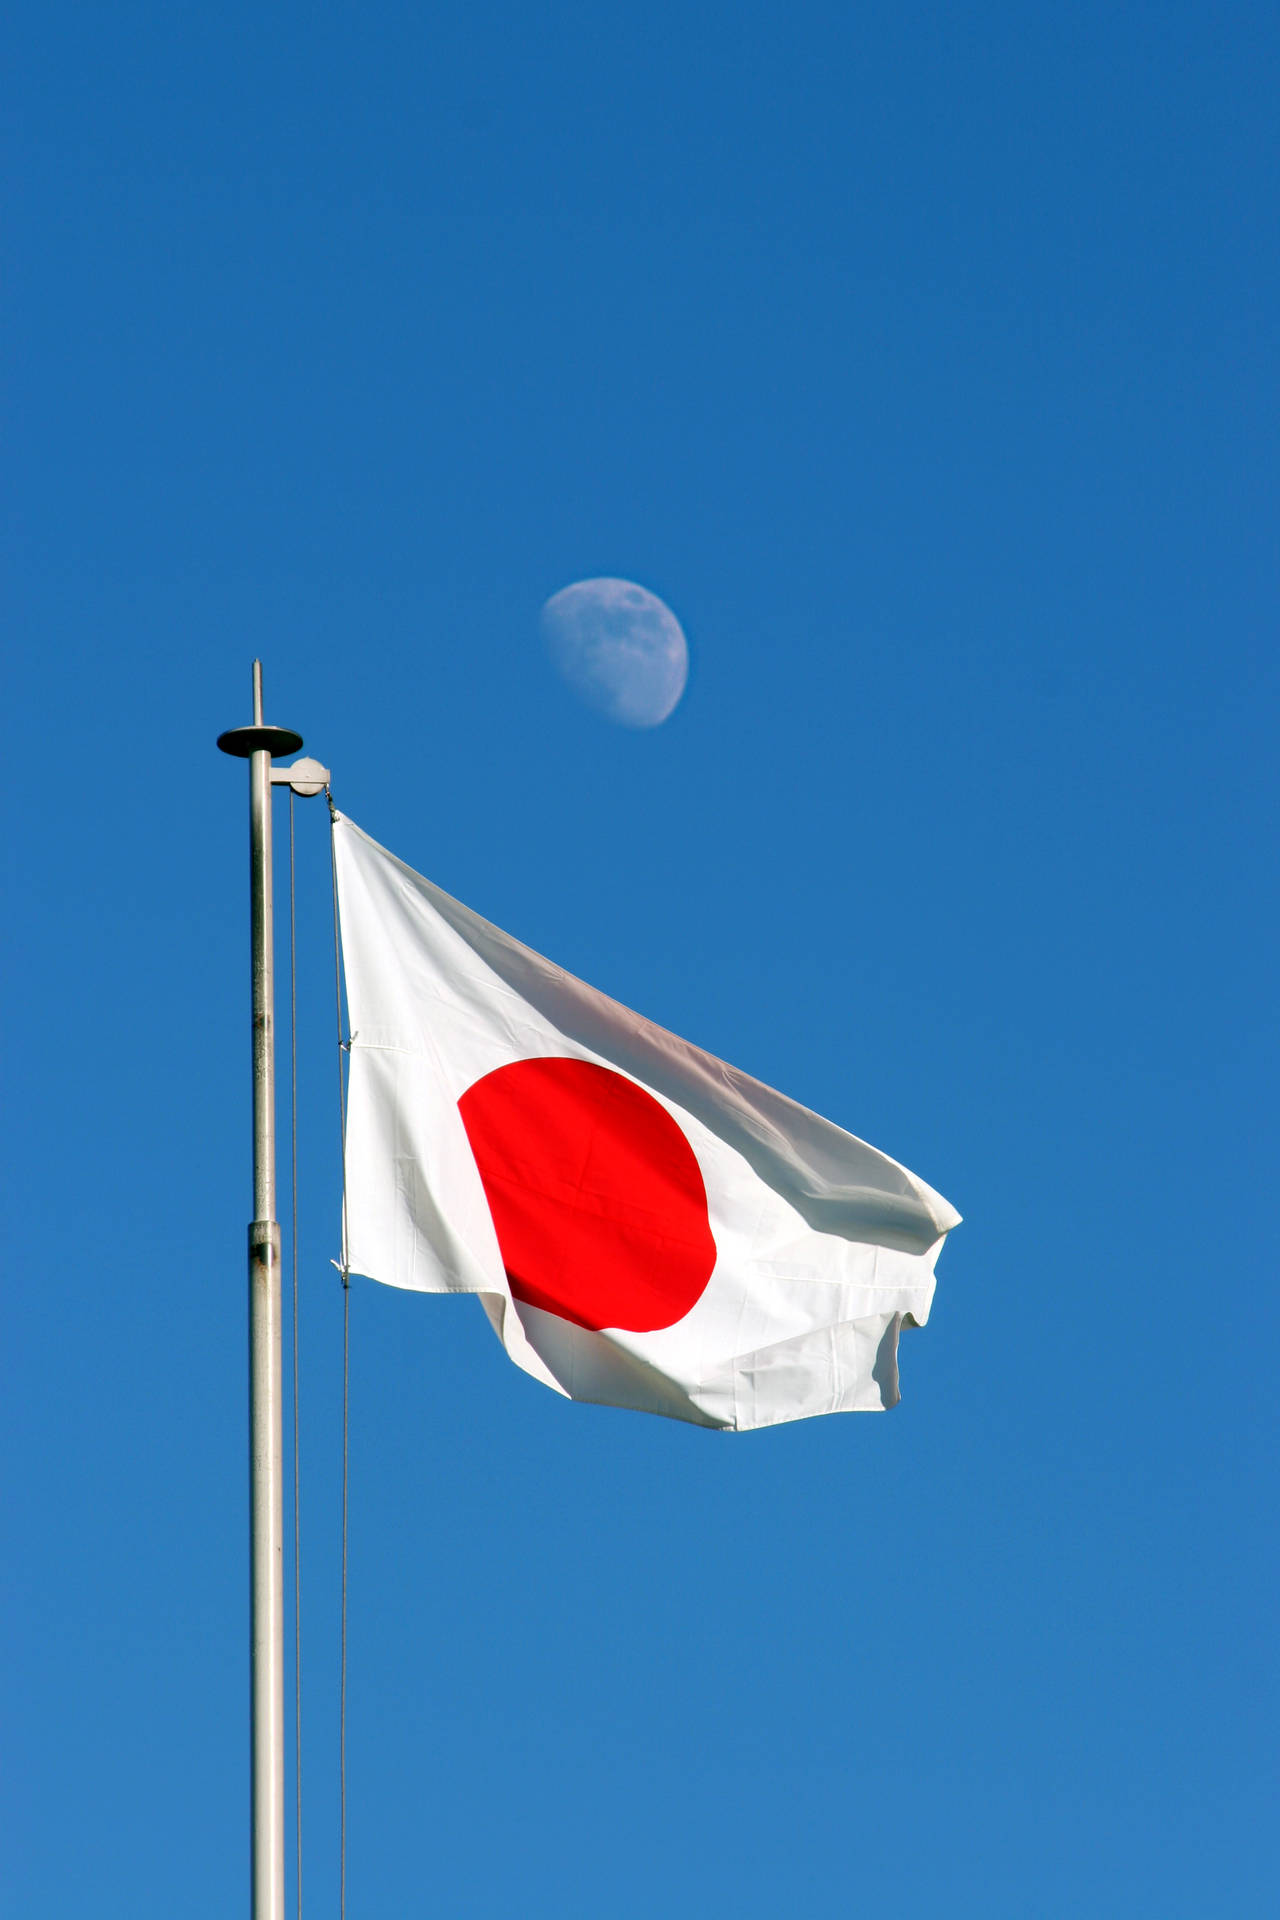 Banderade Japón Con La Luna Detrás Fondo de pantalla